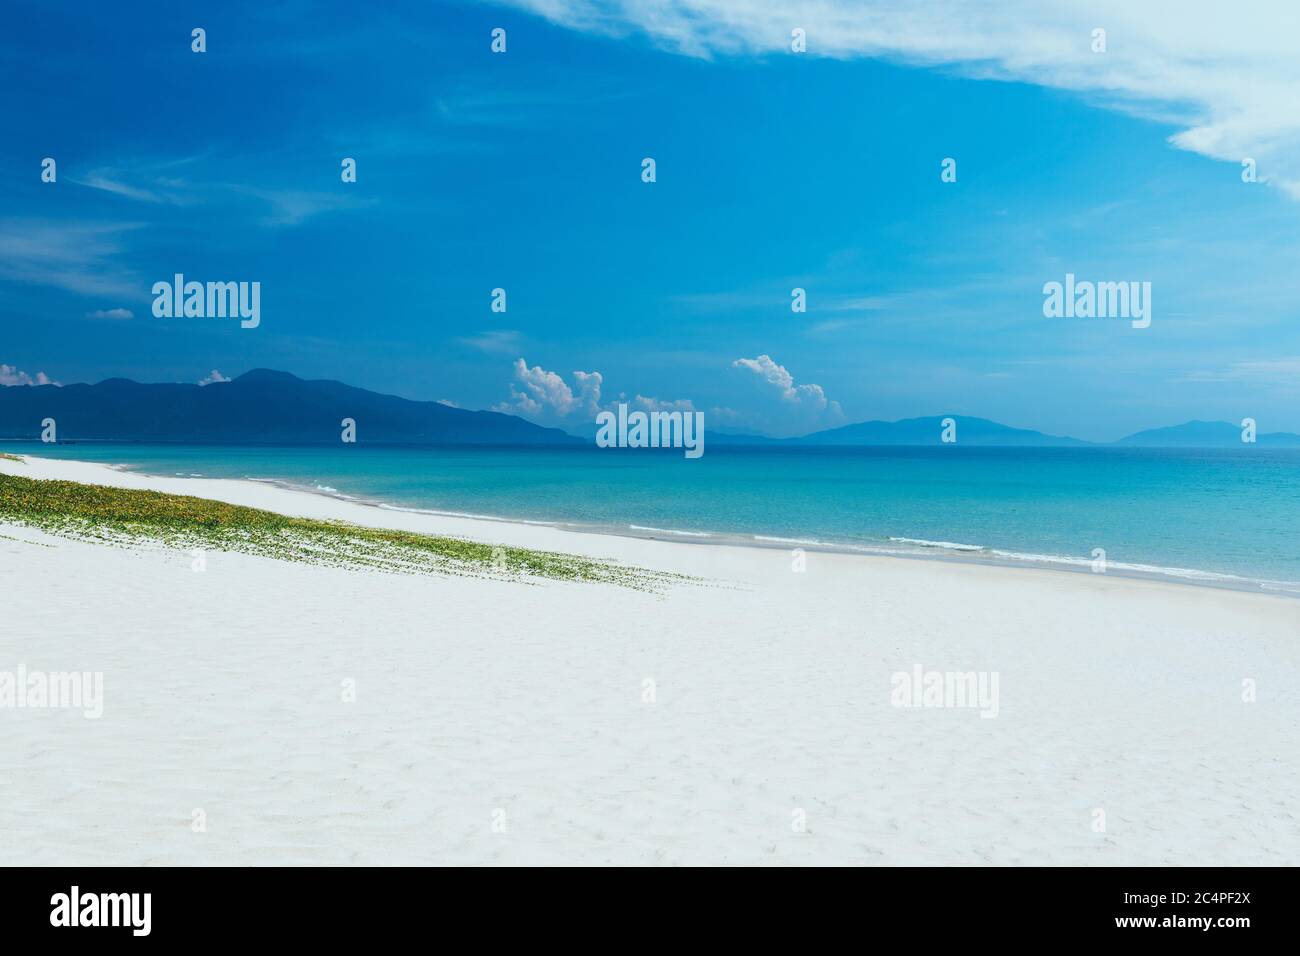 Landschaftsansicht auf den Sandstrand. Blauer Himmel mit weißen Wolken. Ein leerer langer Strand mit Meer und Berghintergrund. Sommerurlaub, Reise. c Stockfoto